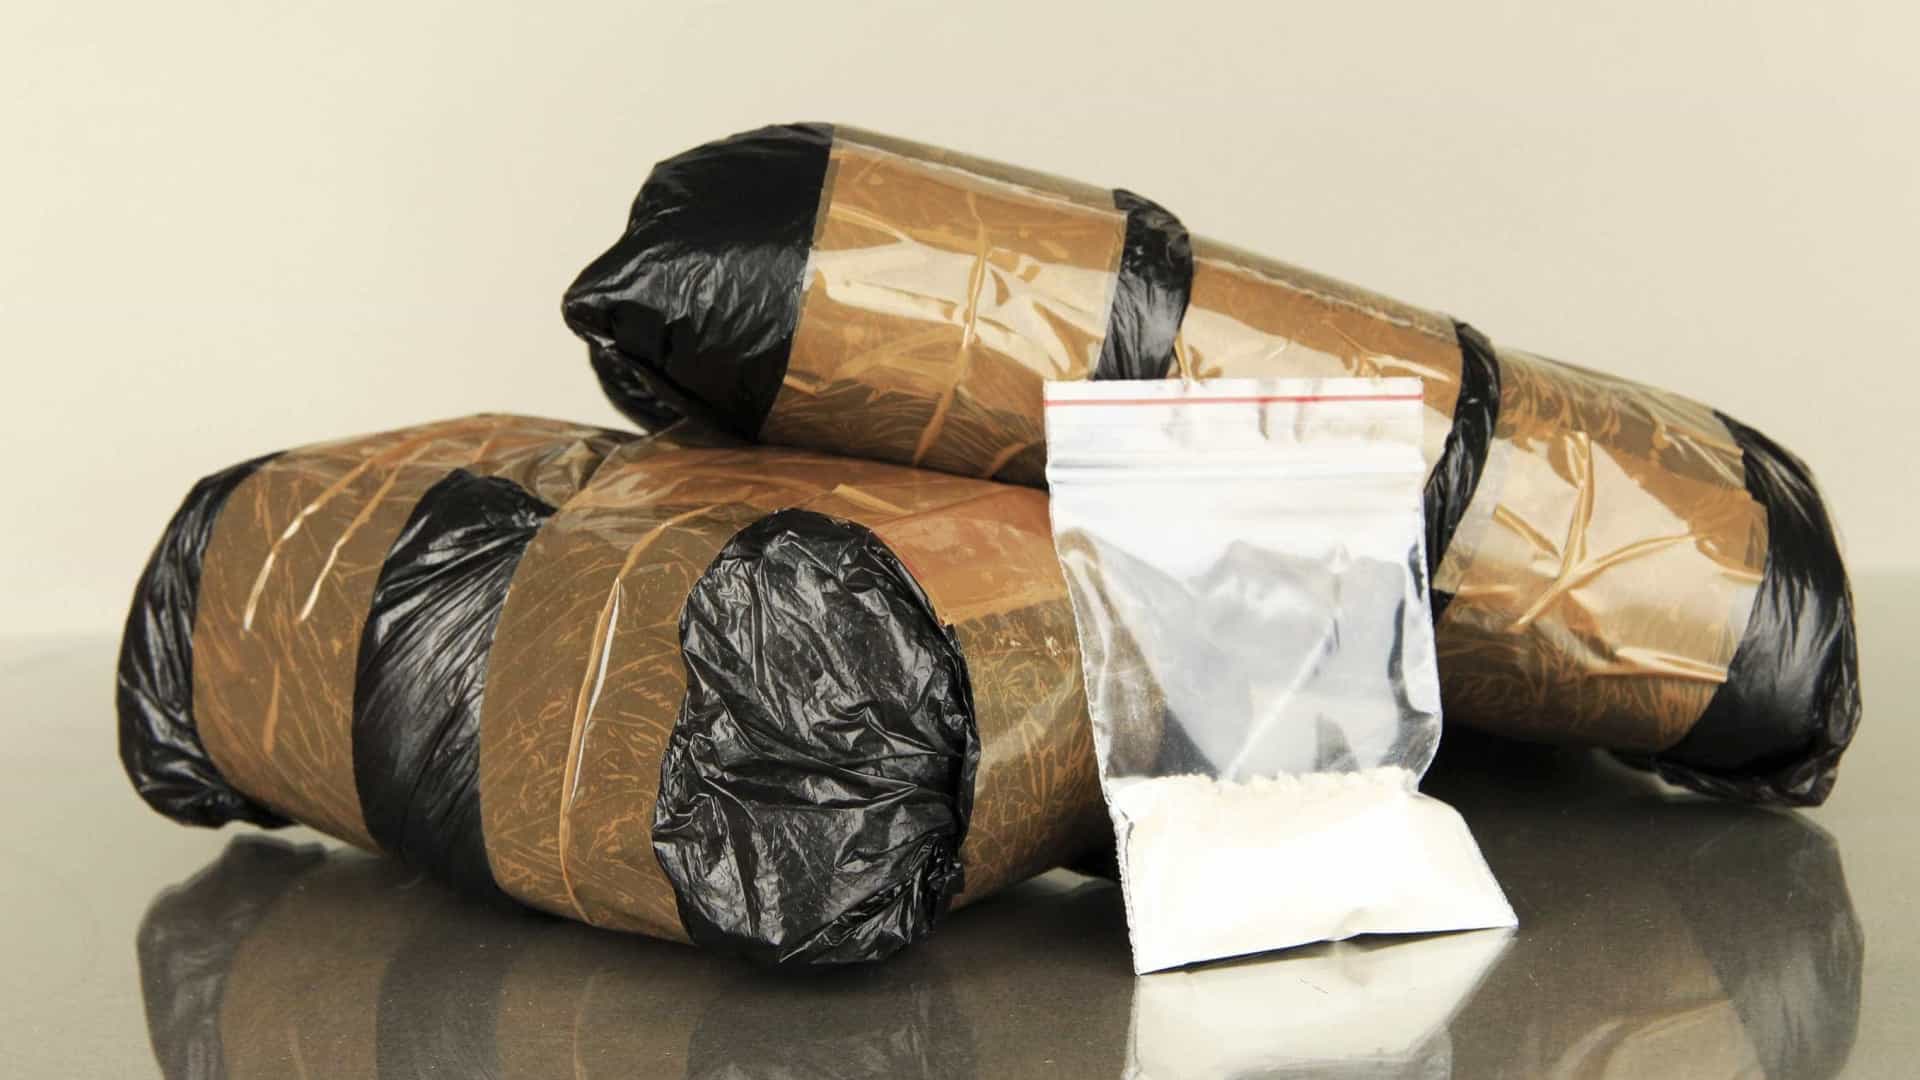 Nigéria apreende recorde de 1,8 toneladas de cocaína. Valia 277,3 milhões